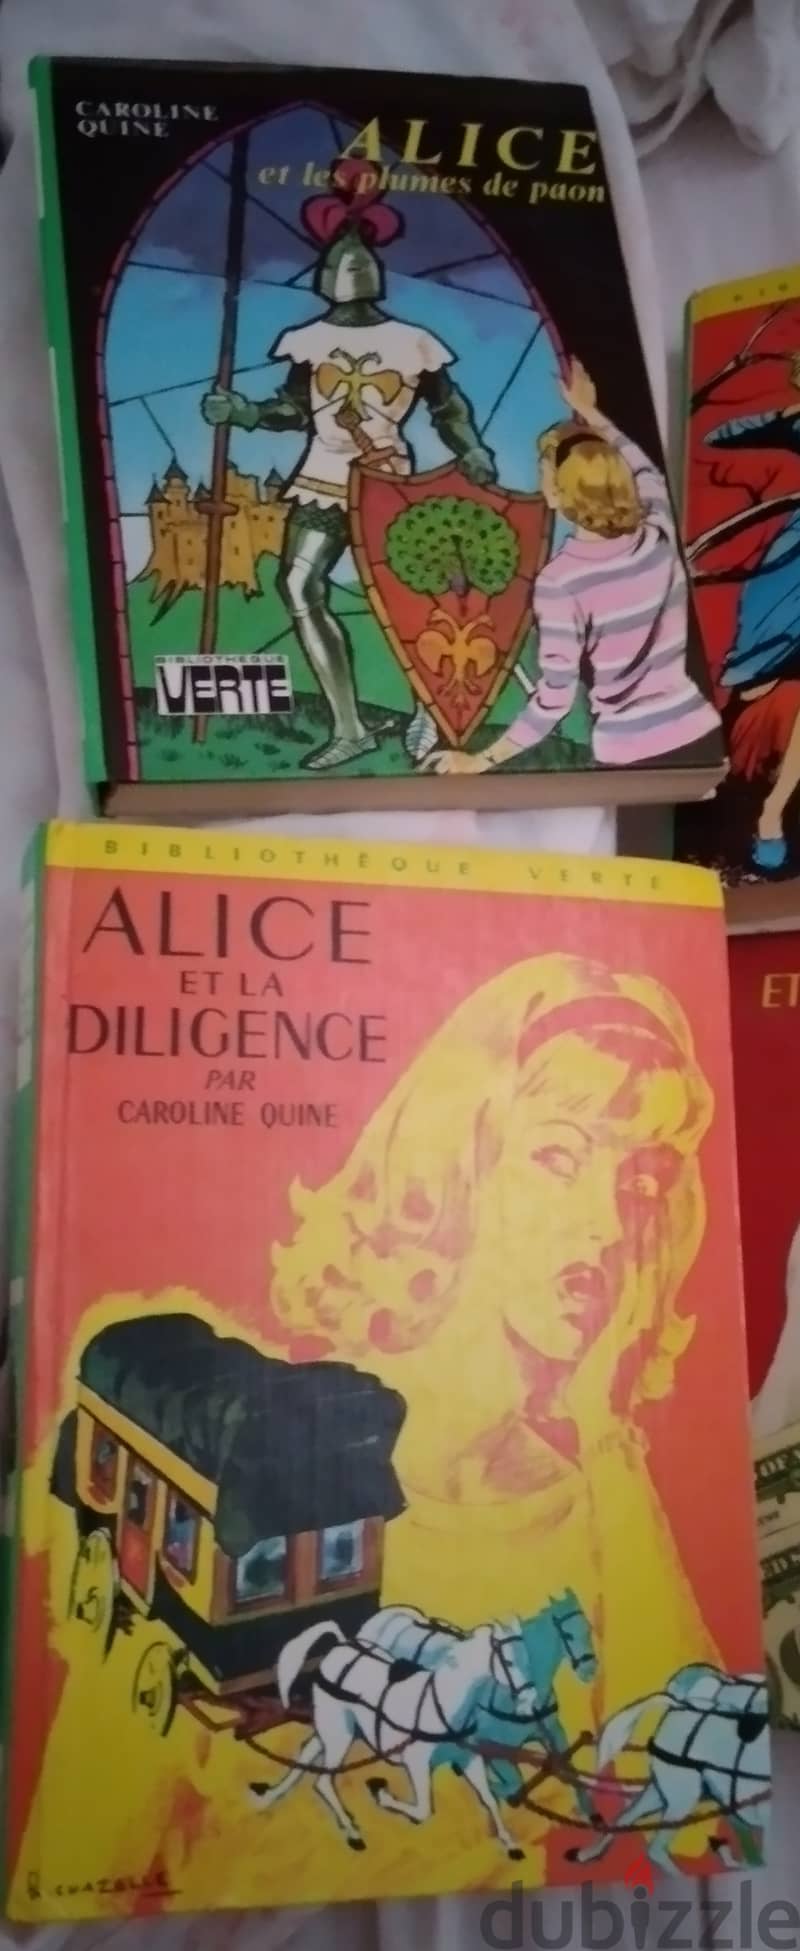 Alice. bibliotheque verte 1